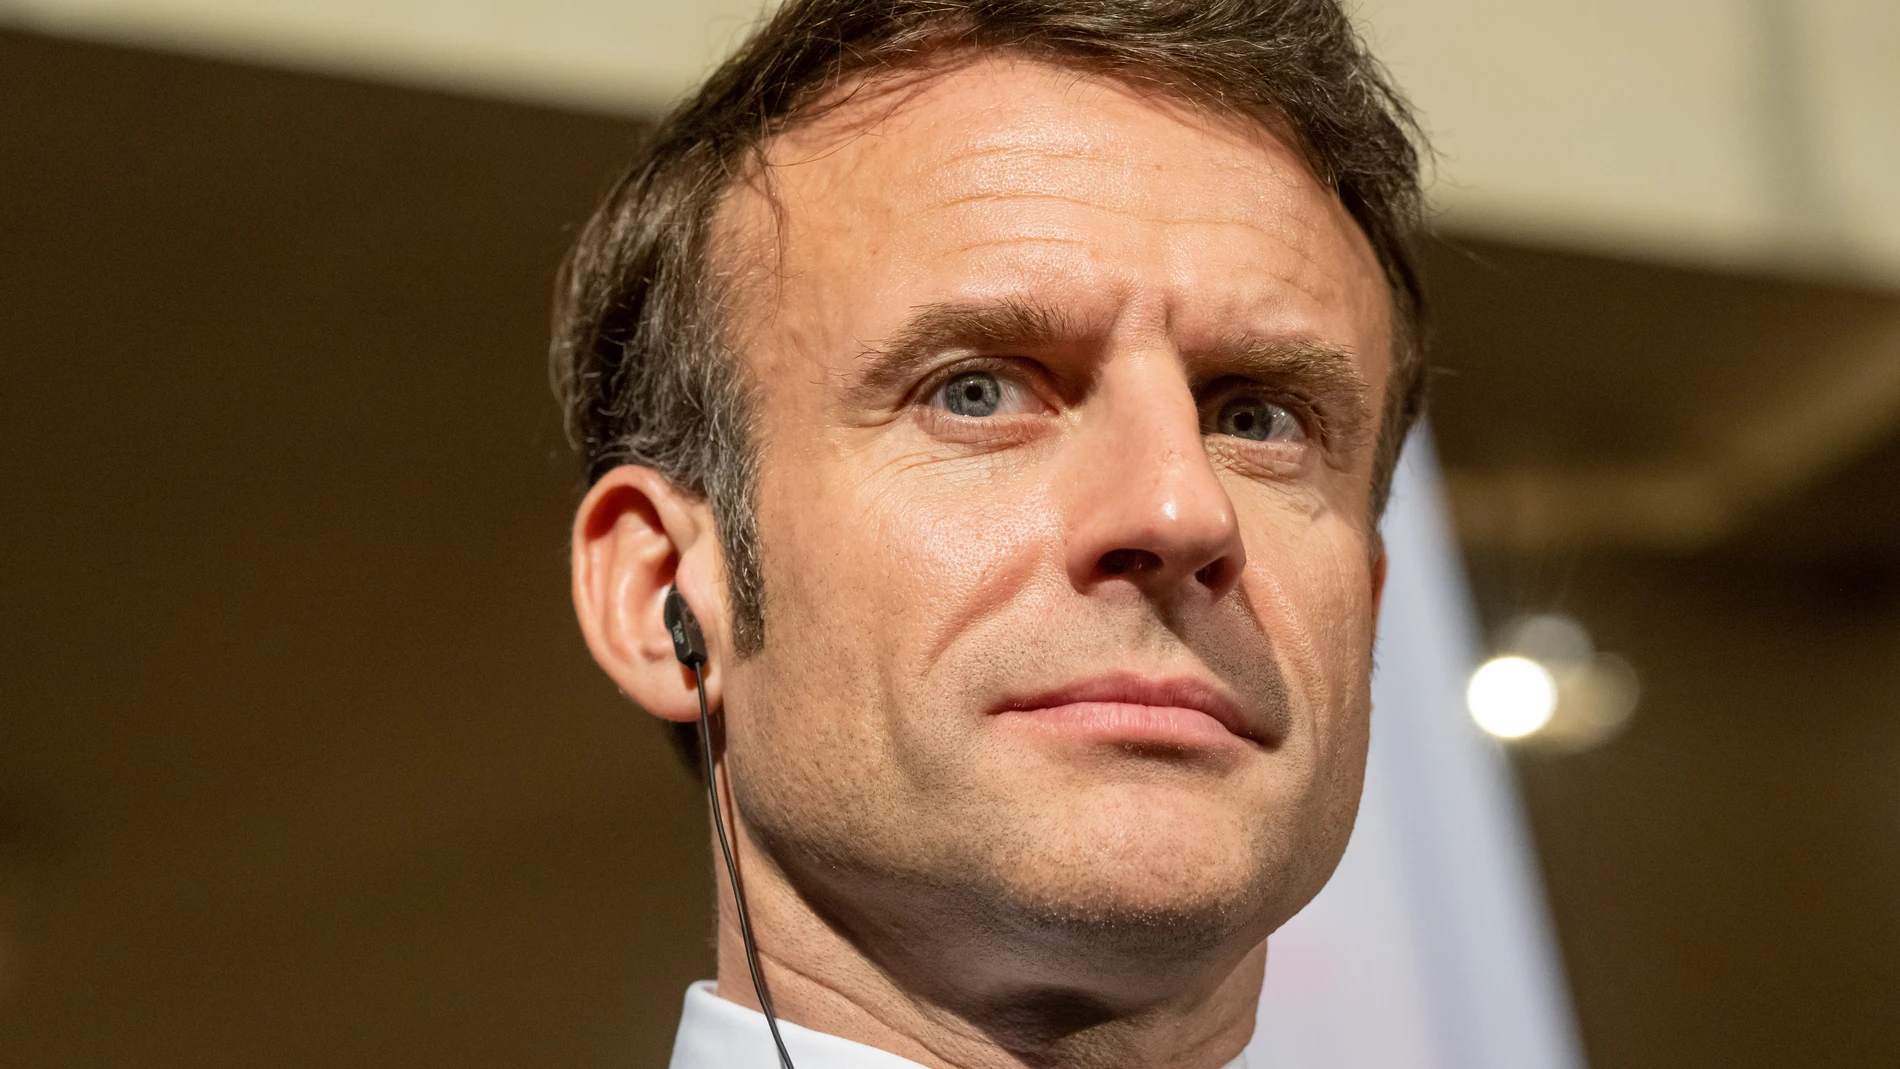 AMP.-Francia.- Macron asegura que el pico de violencia "ha pasado" pero pide "cautela" ante los disturbios de estos días